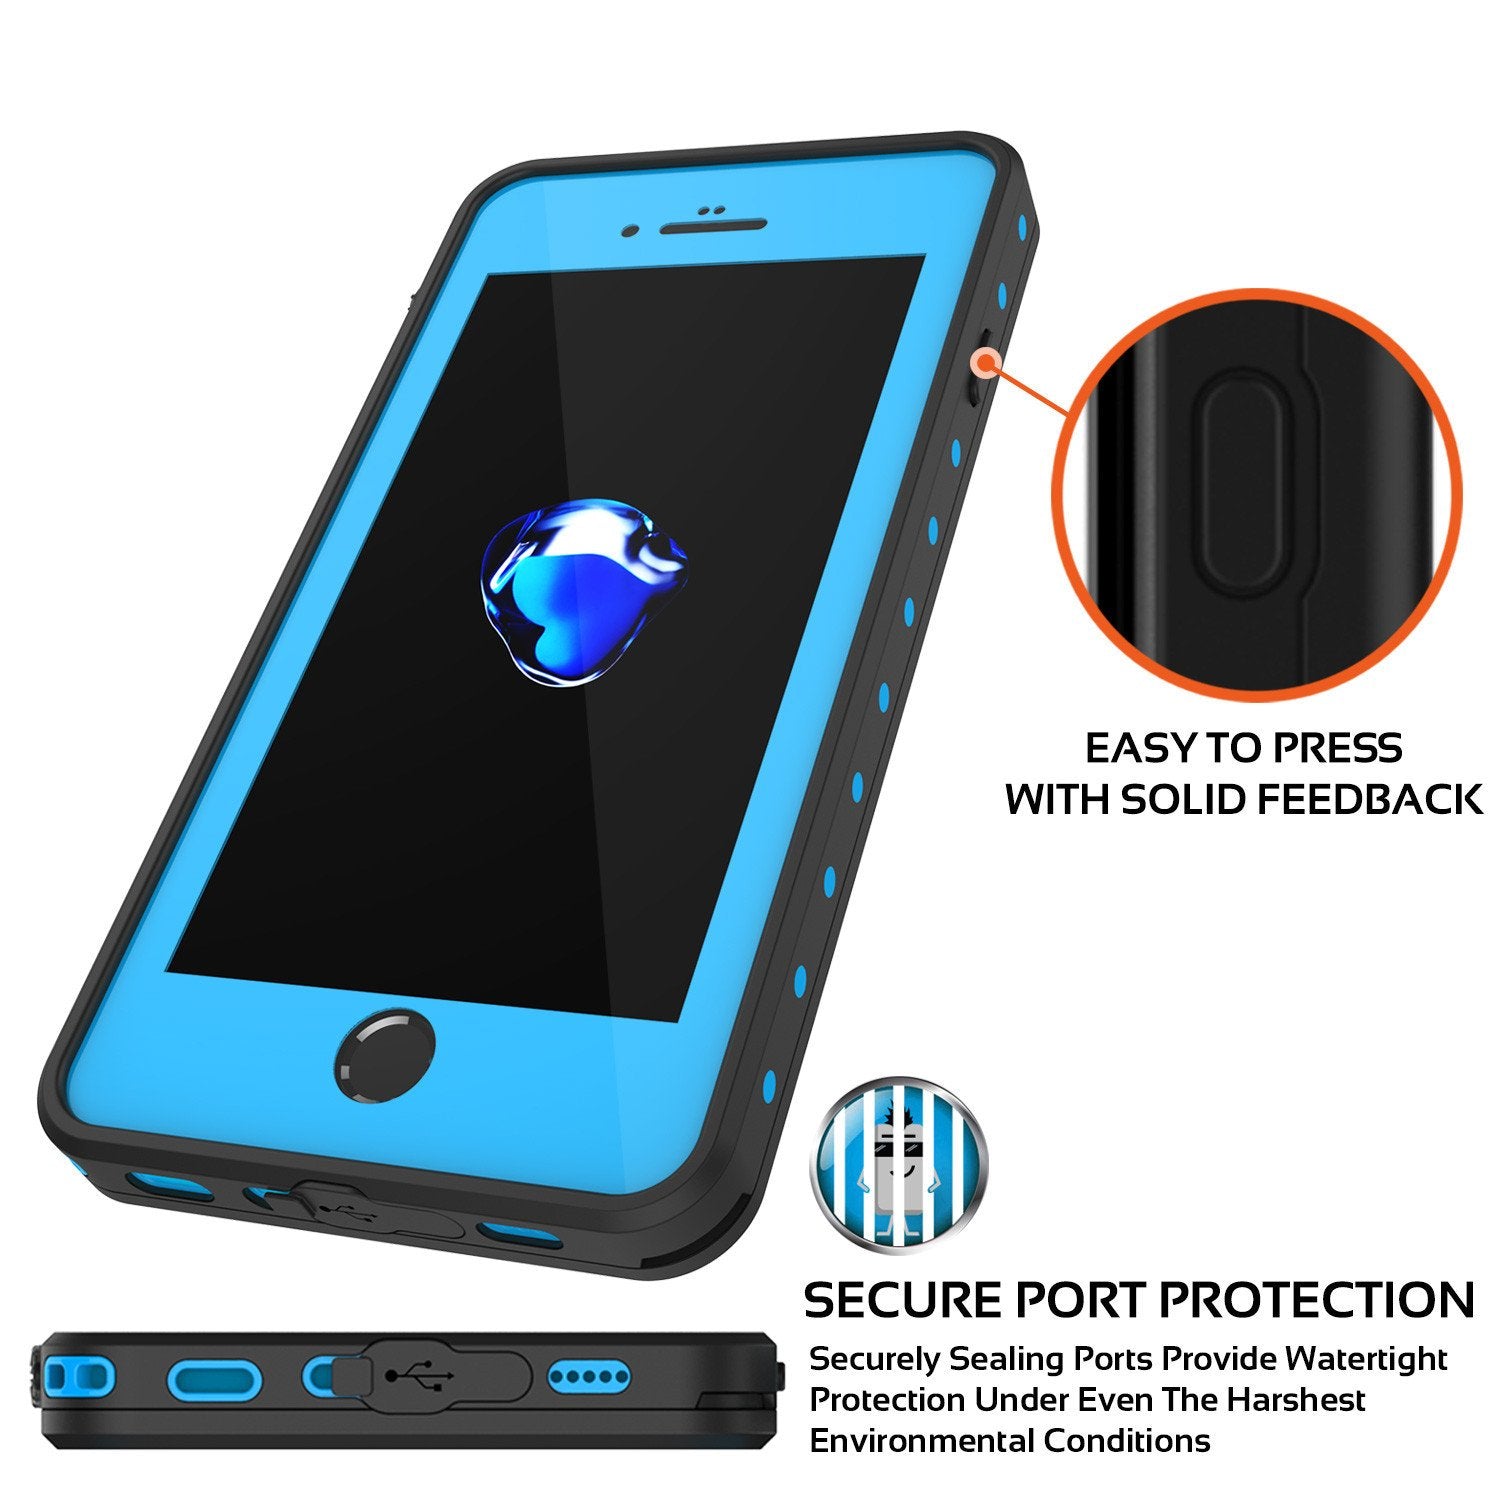 iPhone 7s Plus Waterproof Case, Punkcase [Light Blue] [StudStar Series] [Slim Fit] [IP68 Certified] [Shockproof] [Dirtproof] [Snowproof] Armor Cover for Apple iPhone 7 Plus & 7s +